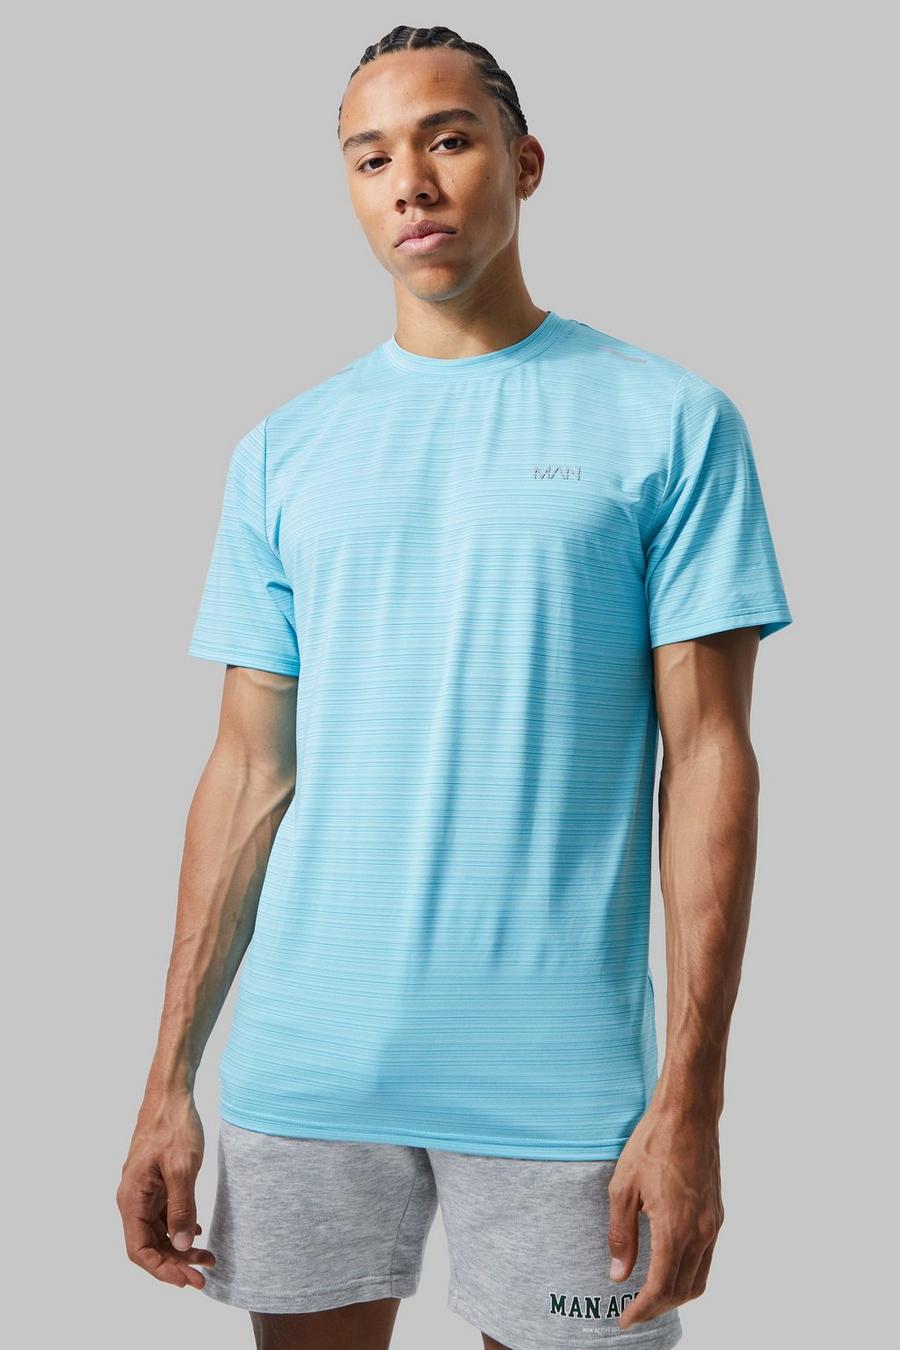 Light blue Tall Man Active Lightweight Performance T-shirt   image number 1